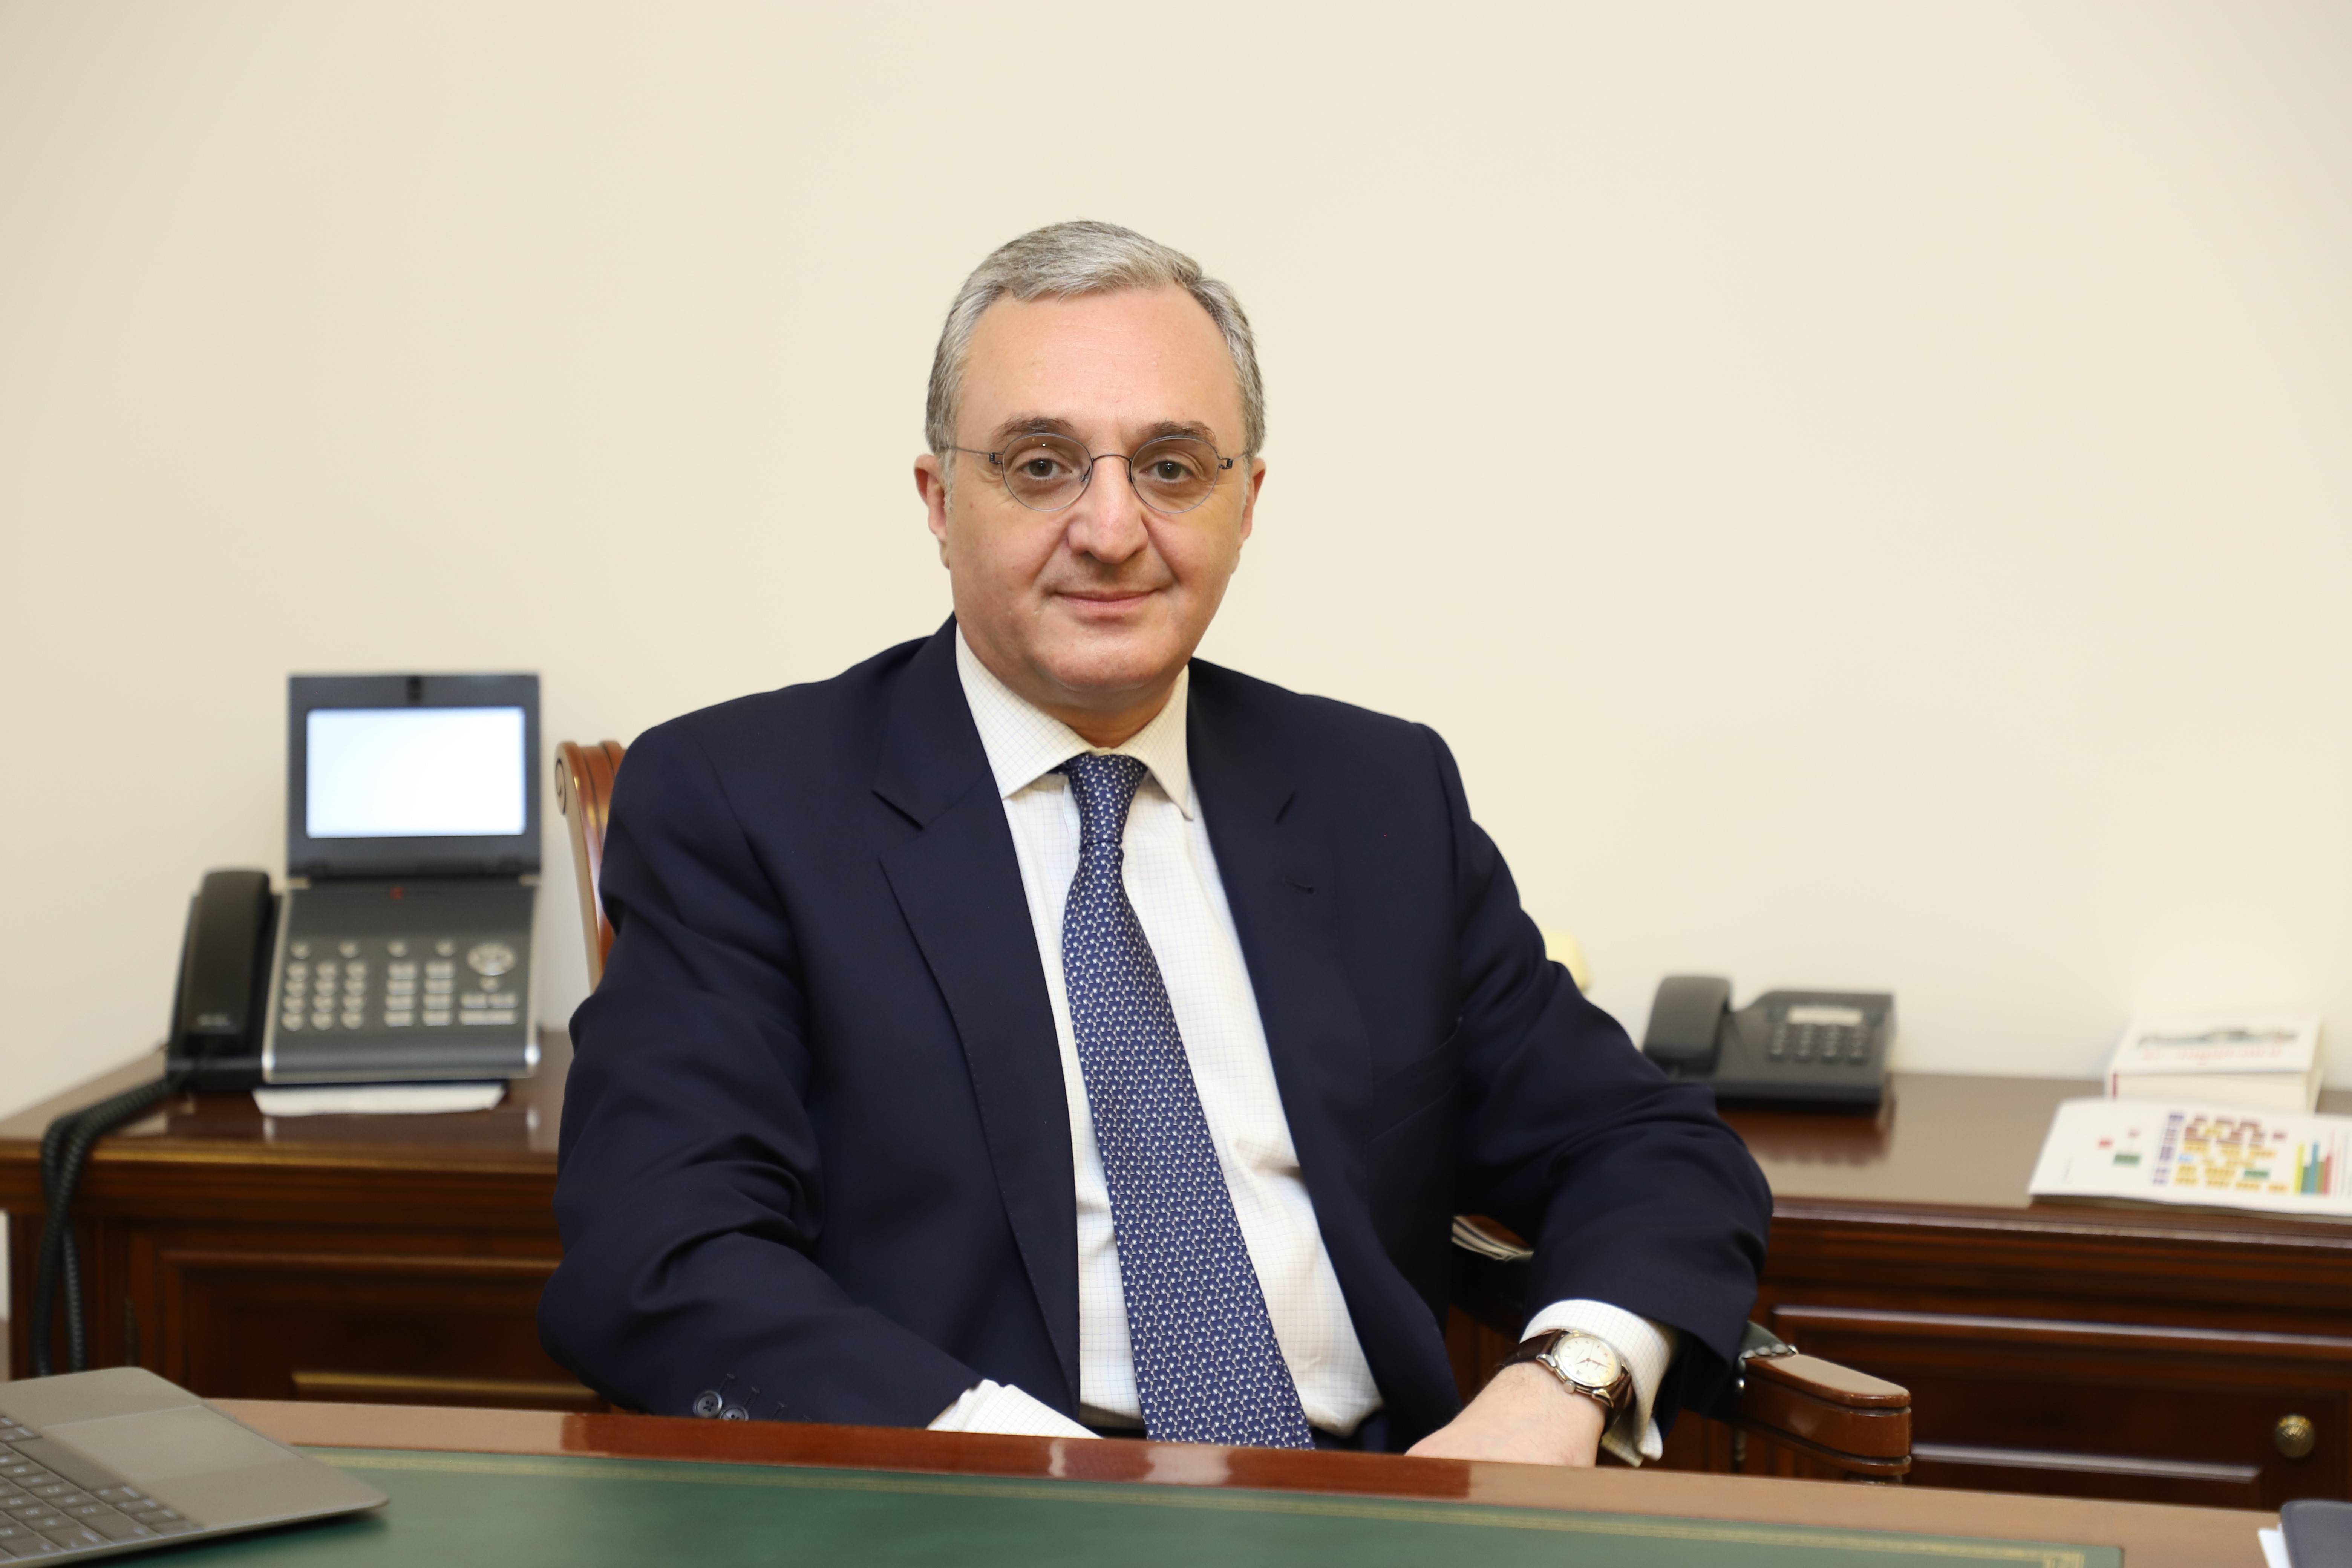 Ermenistan Dışişleri Bakanı: "Azerbaycan bünyesinde Karabağ, Ermenisiz Karabağ demek olacak"